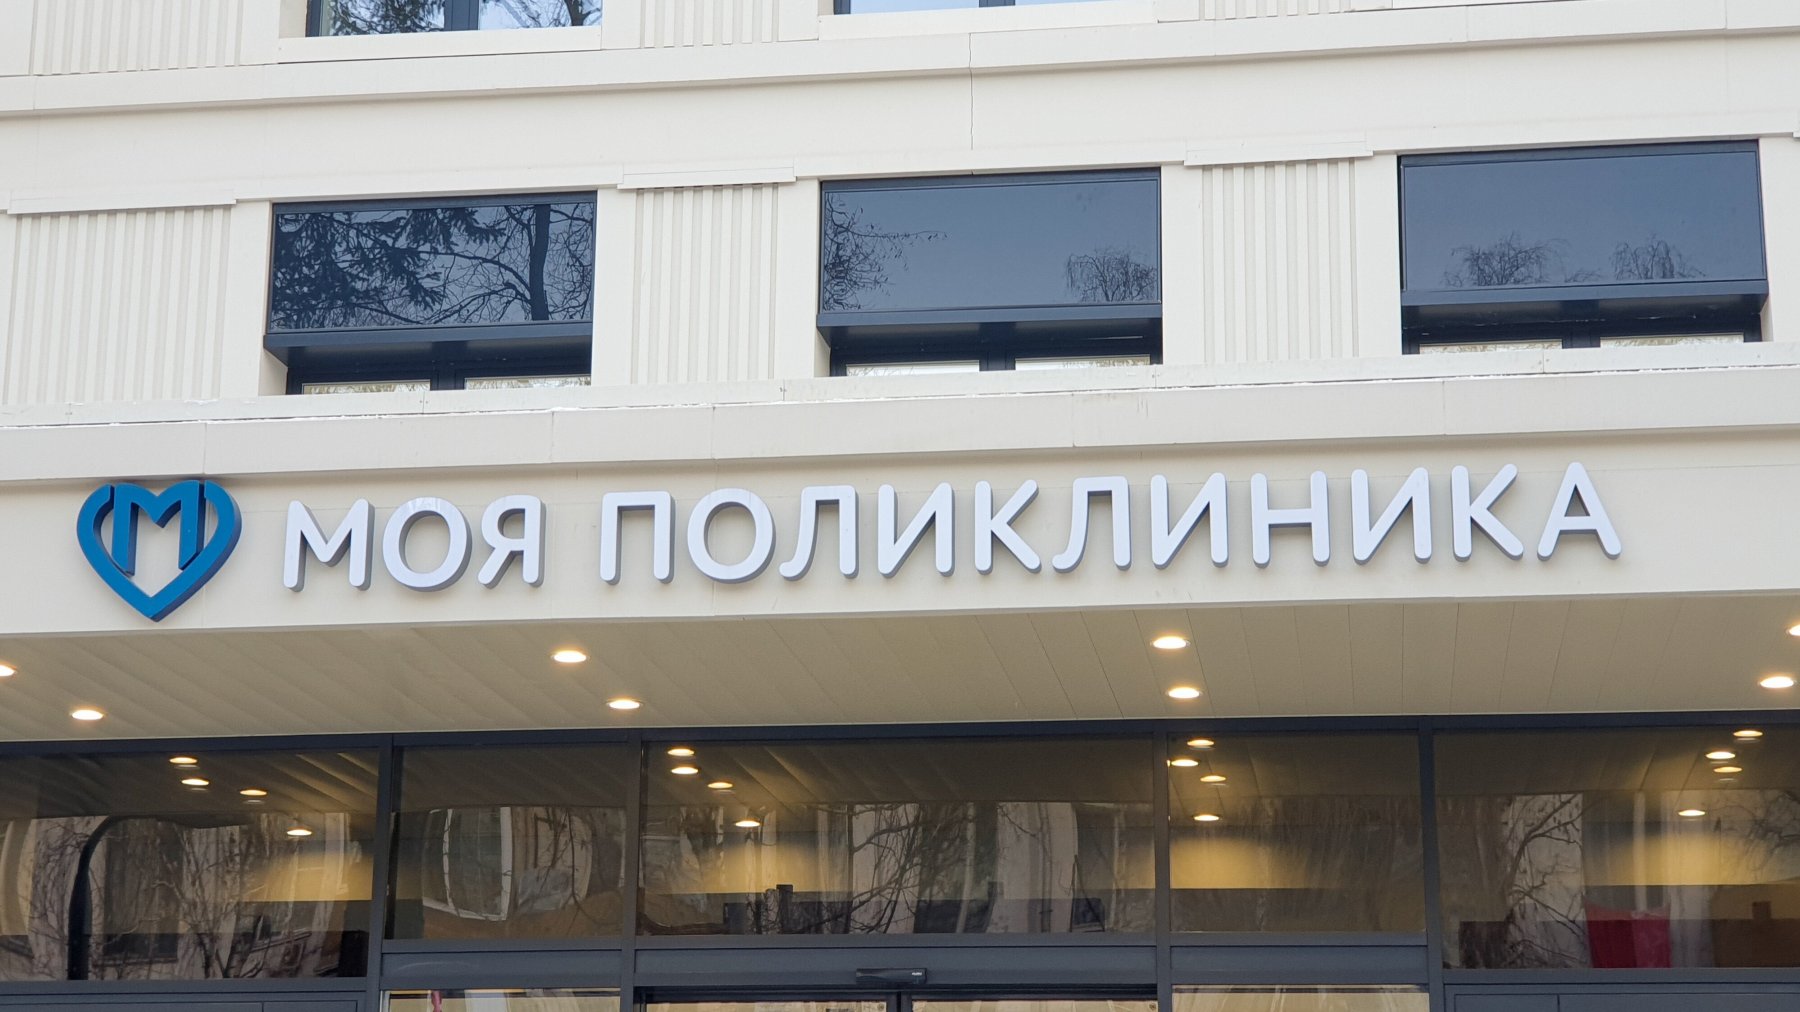 Более 1,5 млн москвичей получают медпомощь в обновленных поликлиниках